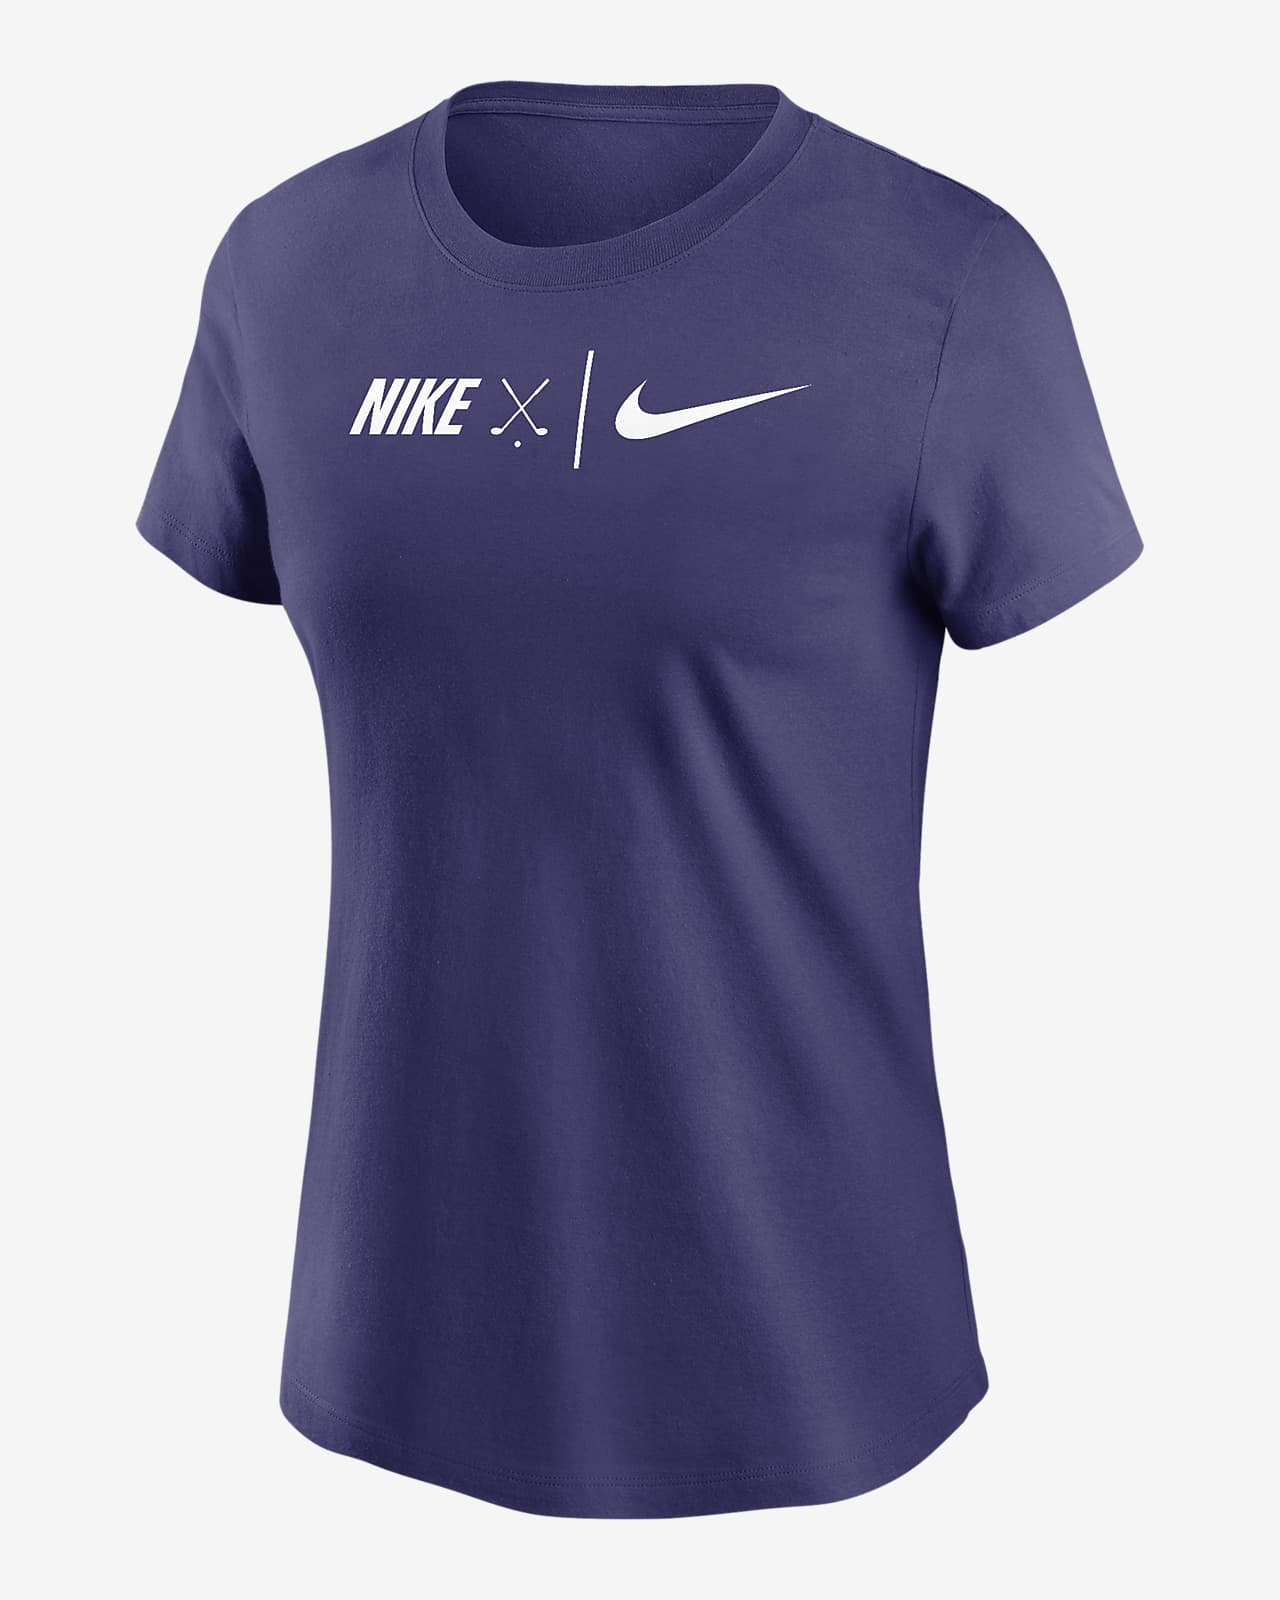 Nike Women's Golf T-Shirt